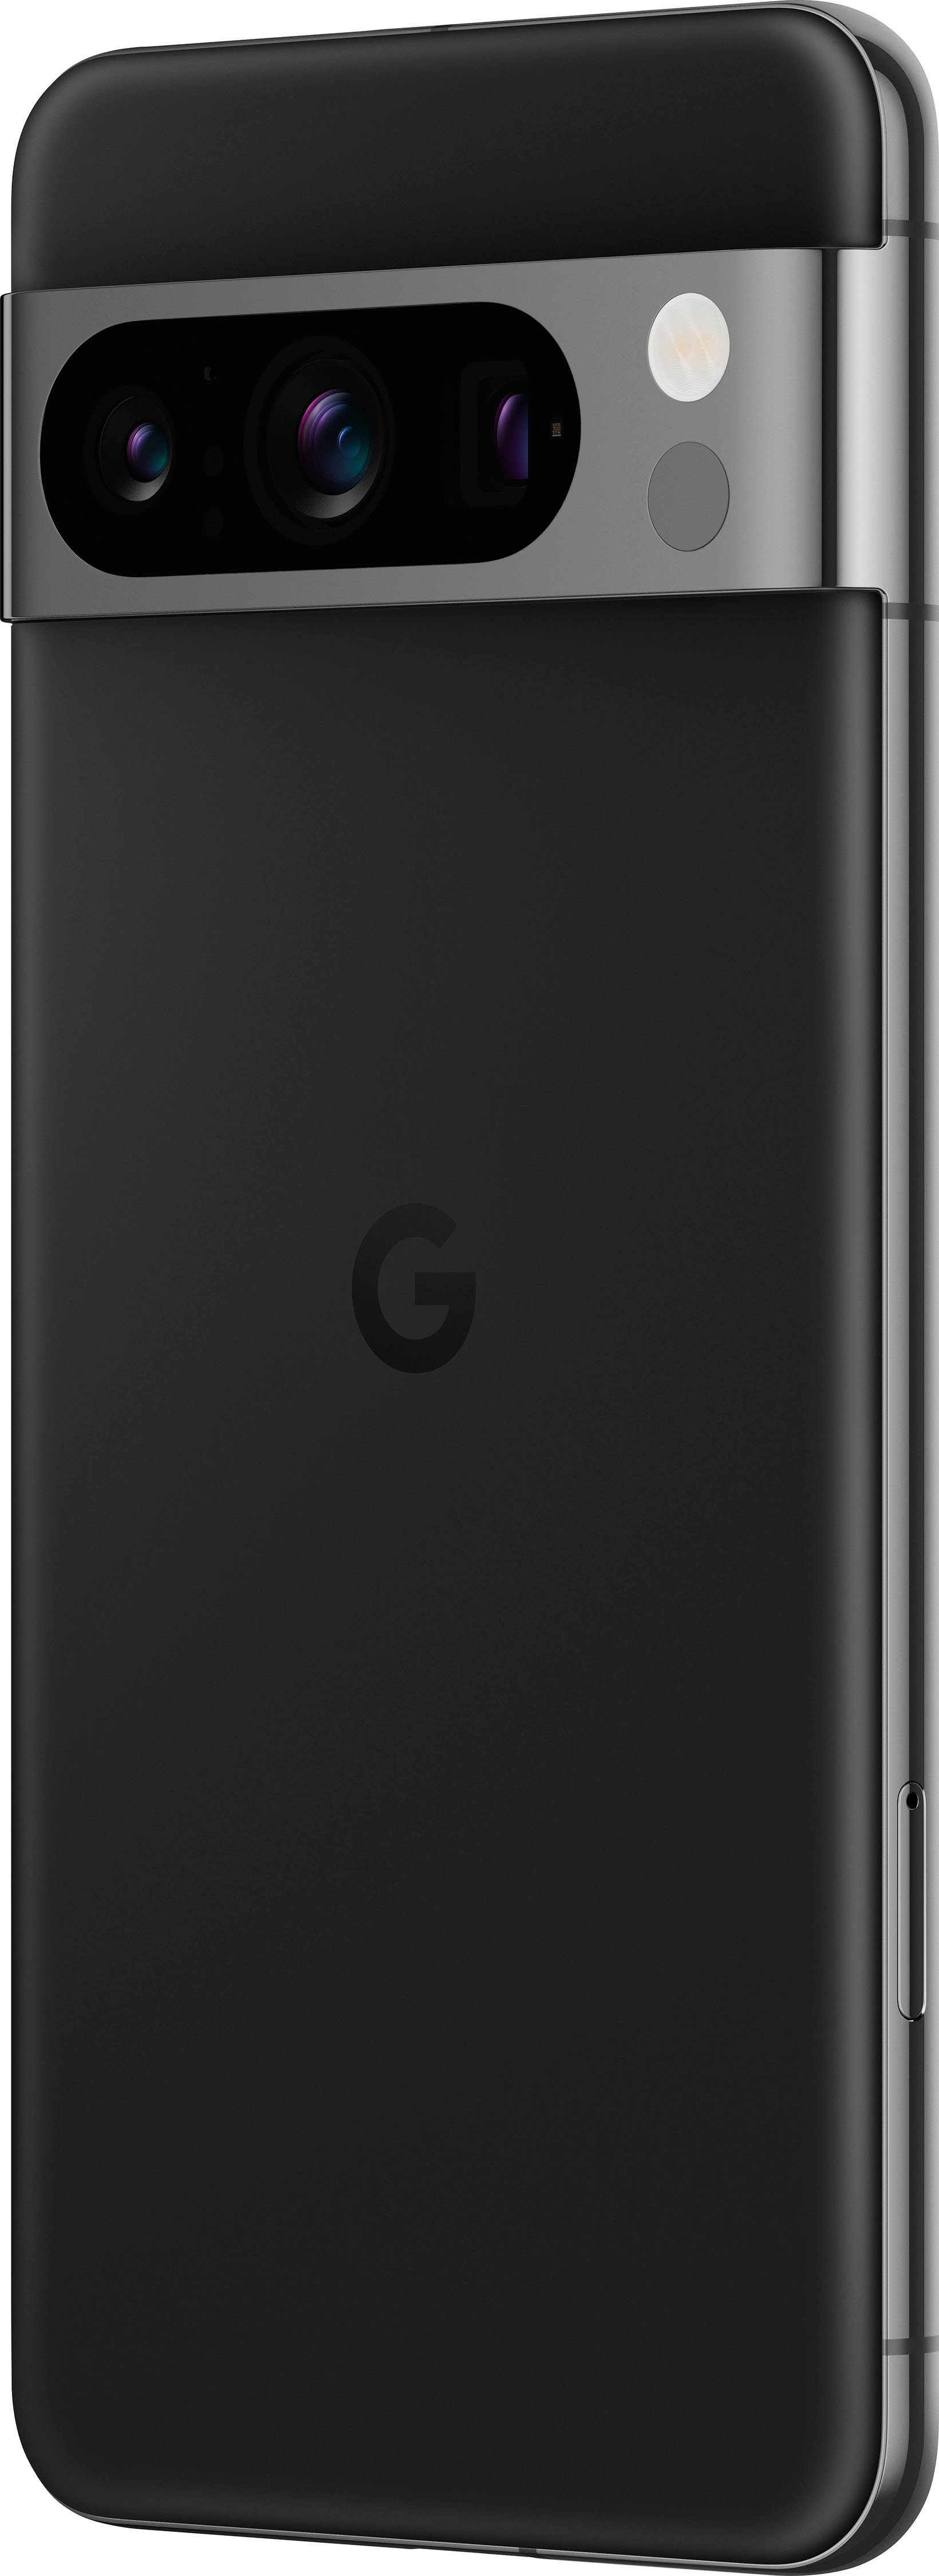 50 Pro, Smartphone Pixel GB Obsidian (17 Google 256 cm/6,7 Zoll, MP 256GB 8 Speicherplatz, Kamera)